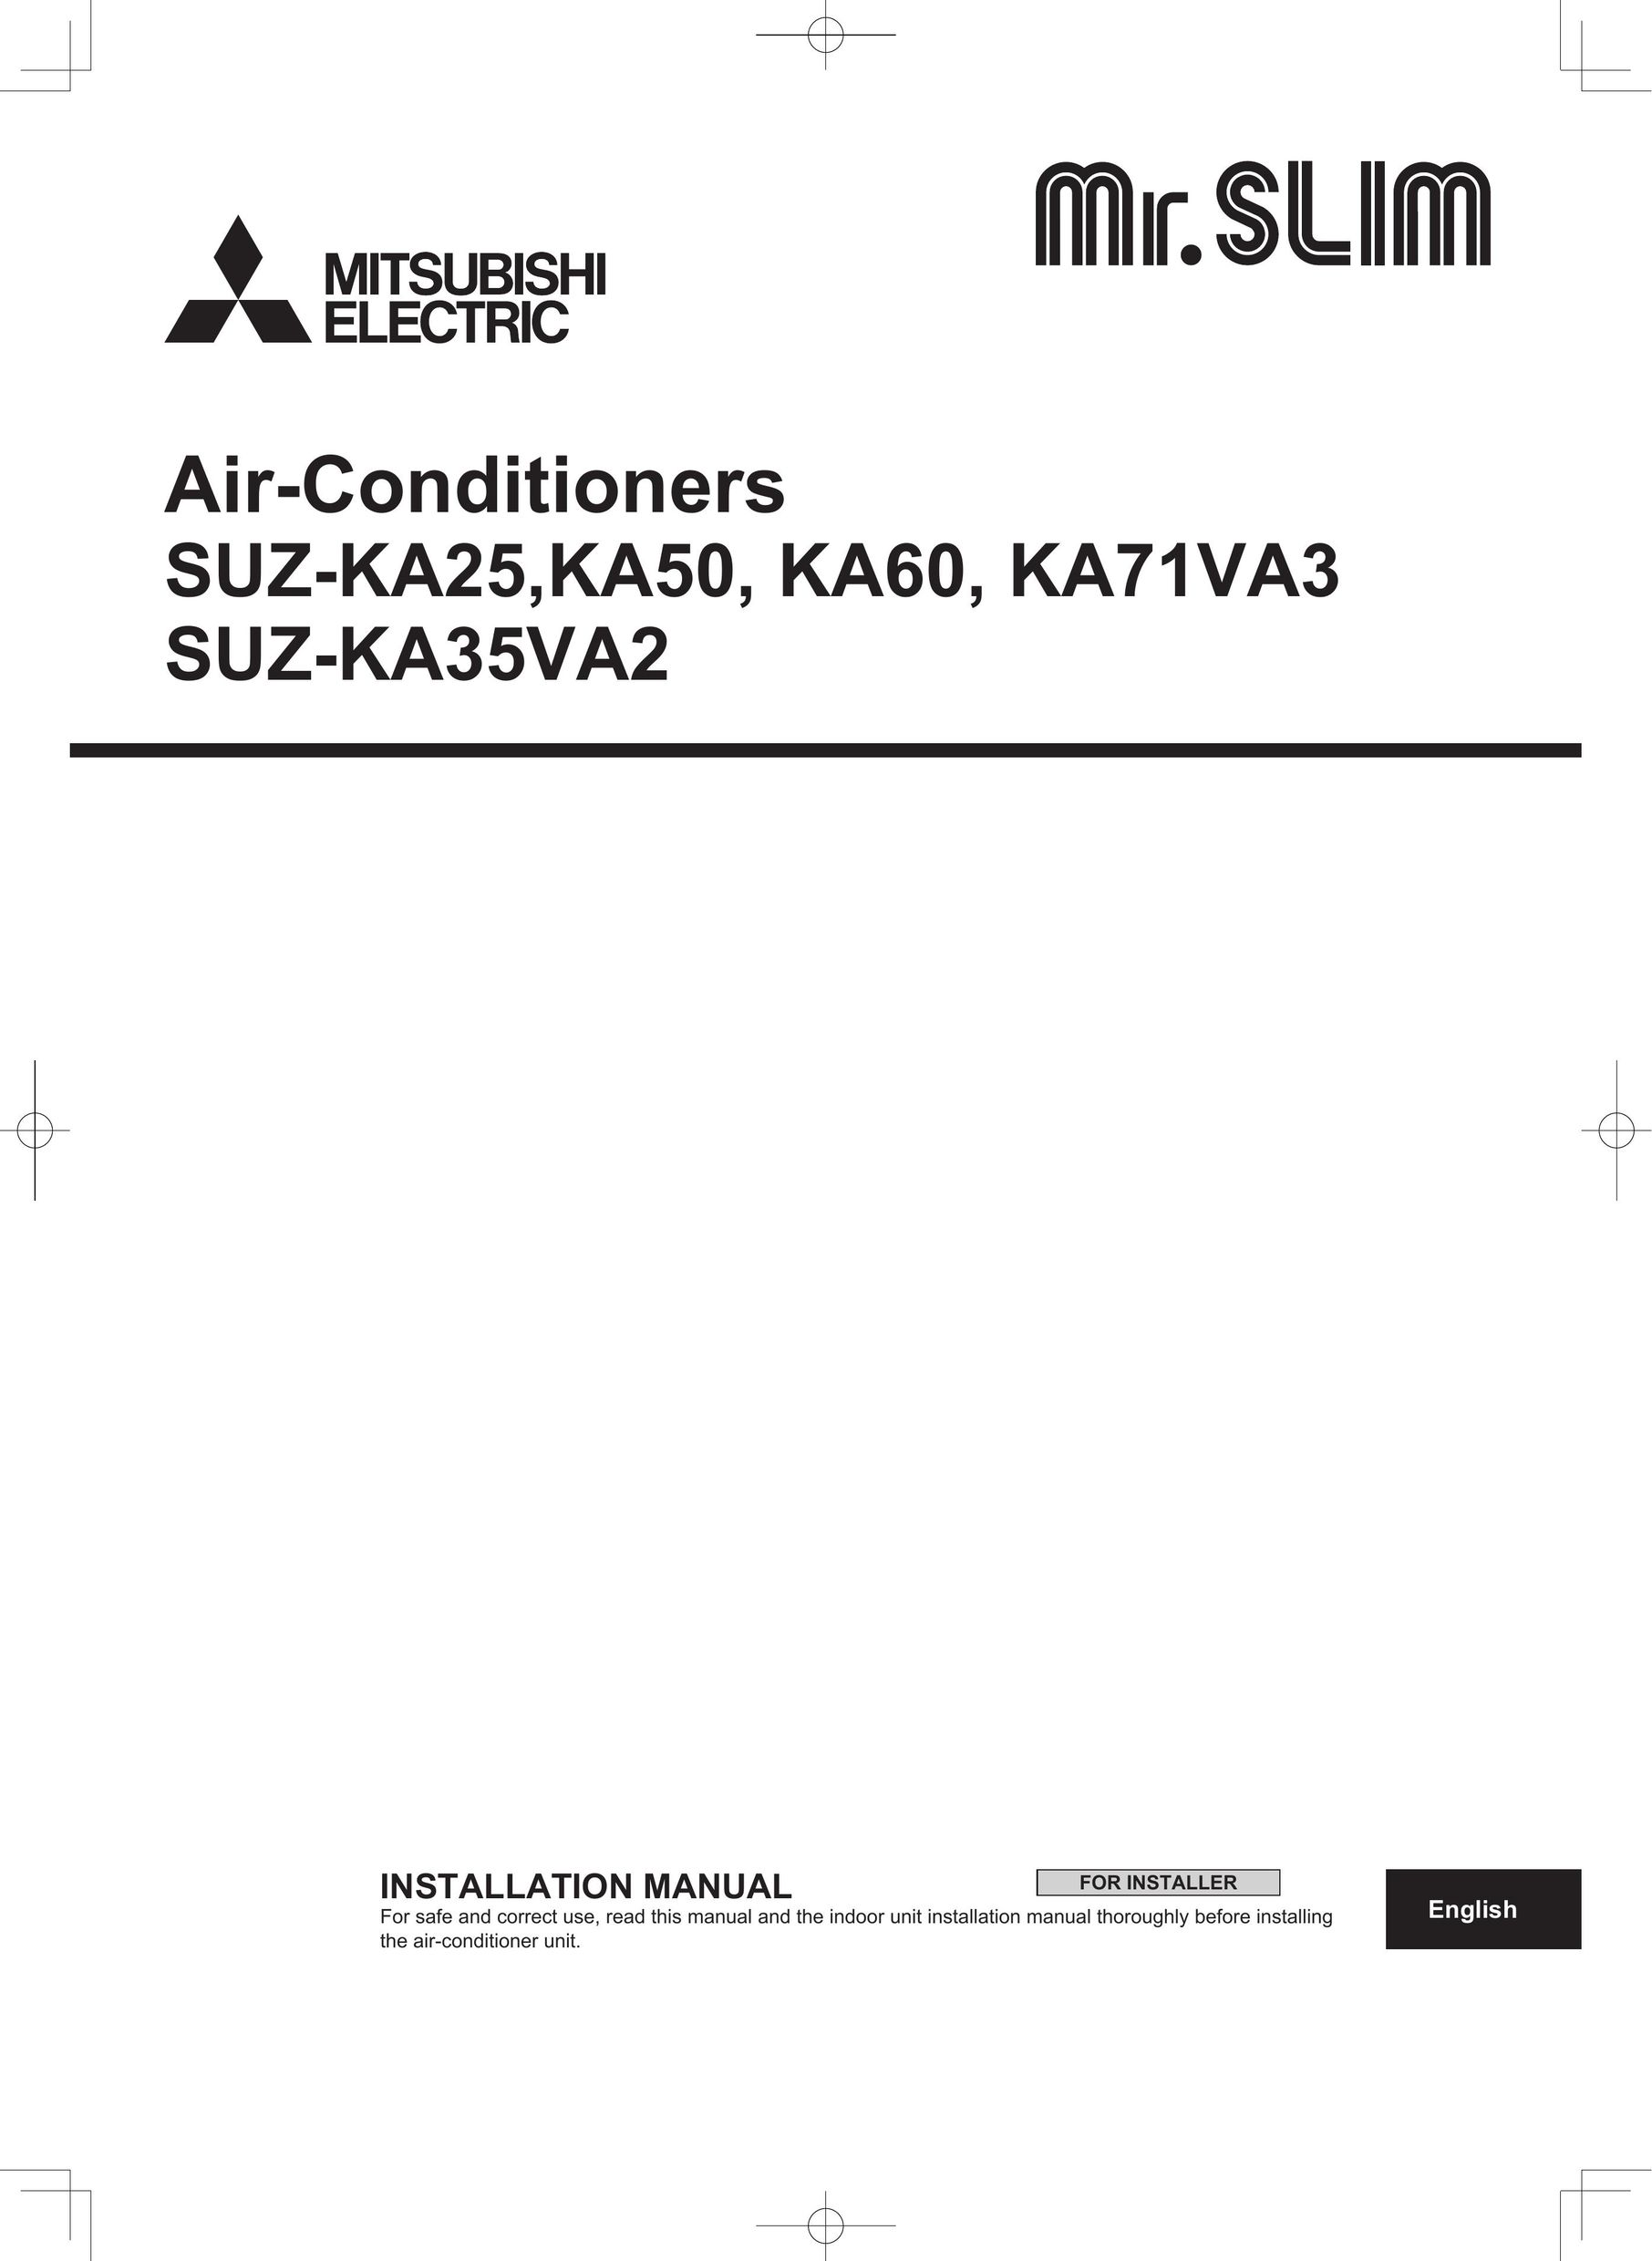 Mitsumi electronic KA71VA3 Air Conditioner User Manual